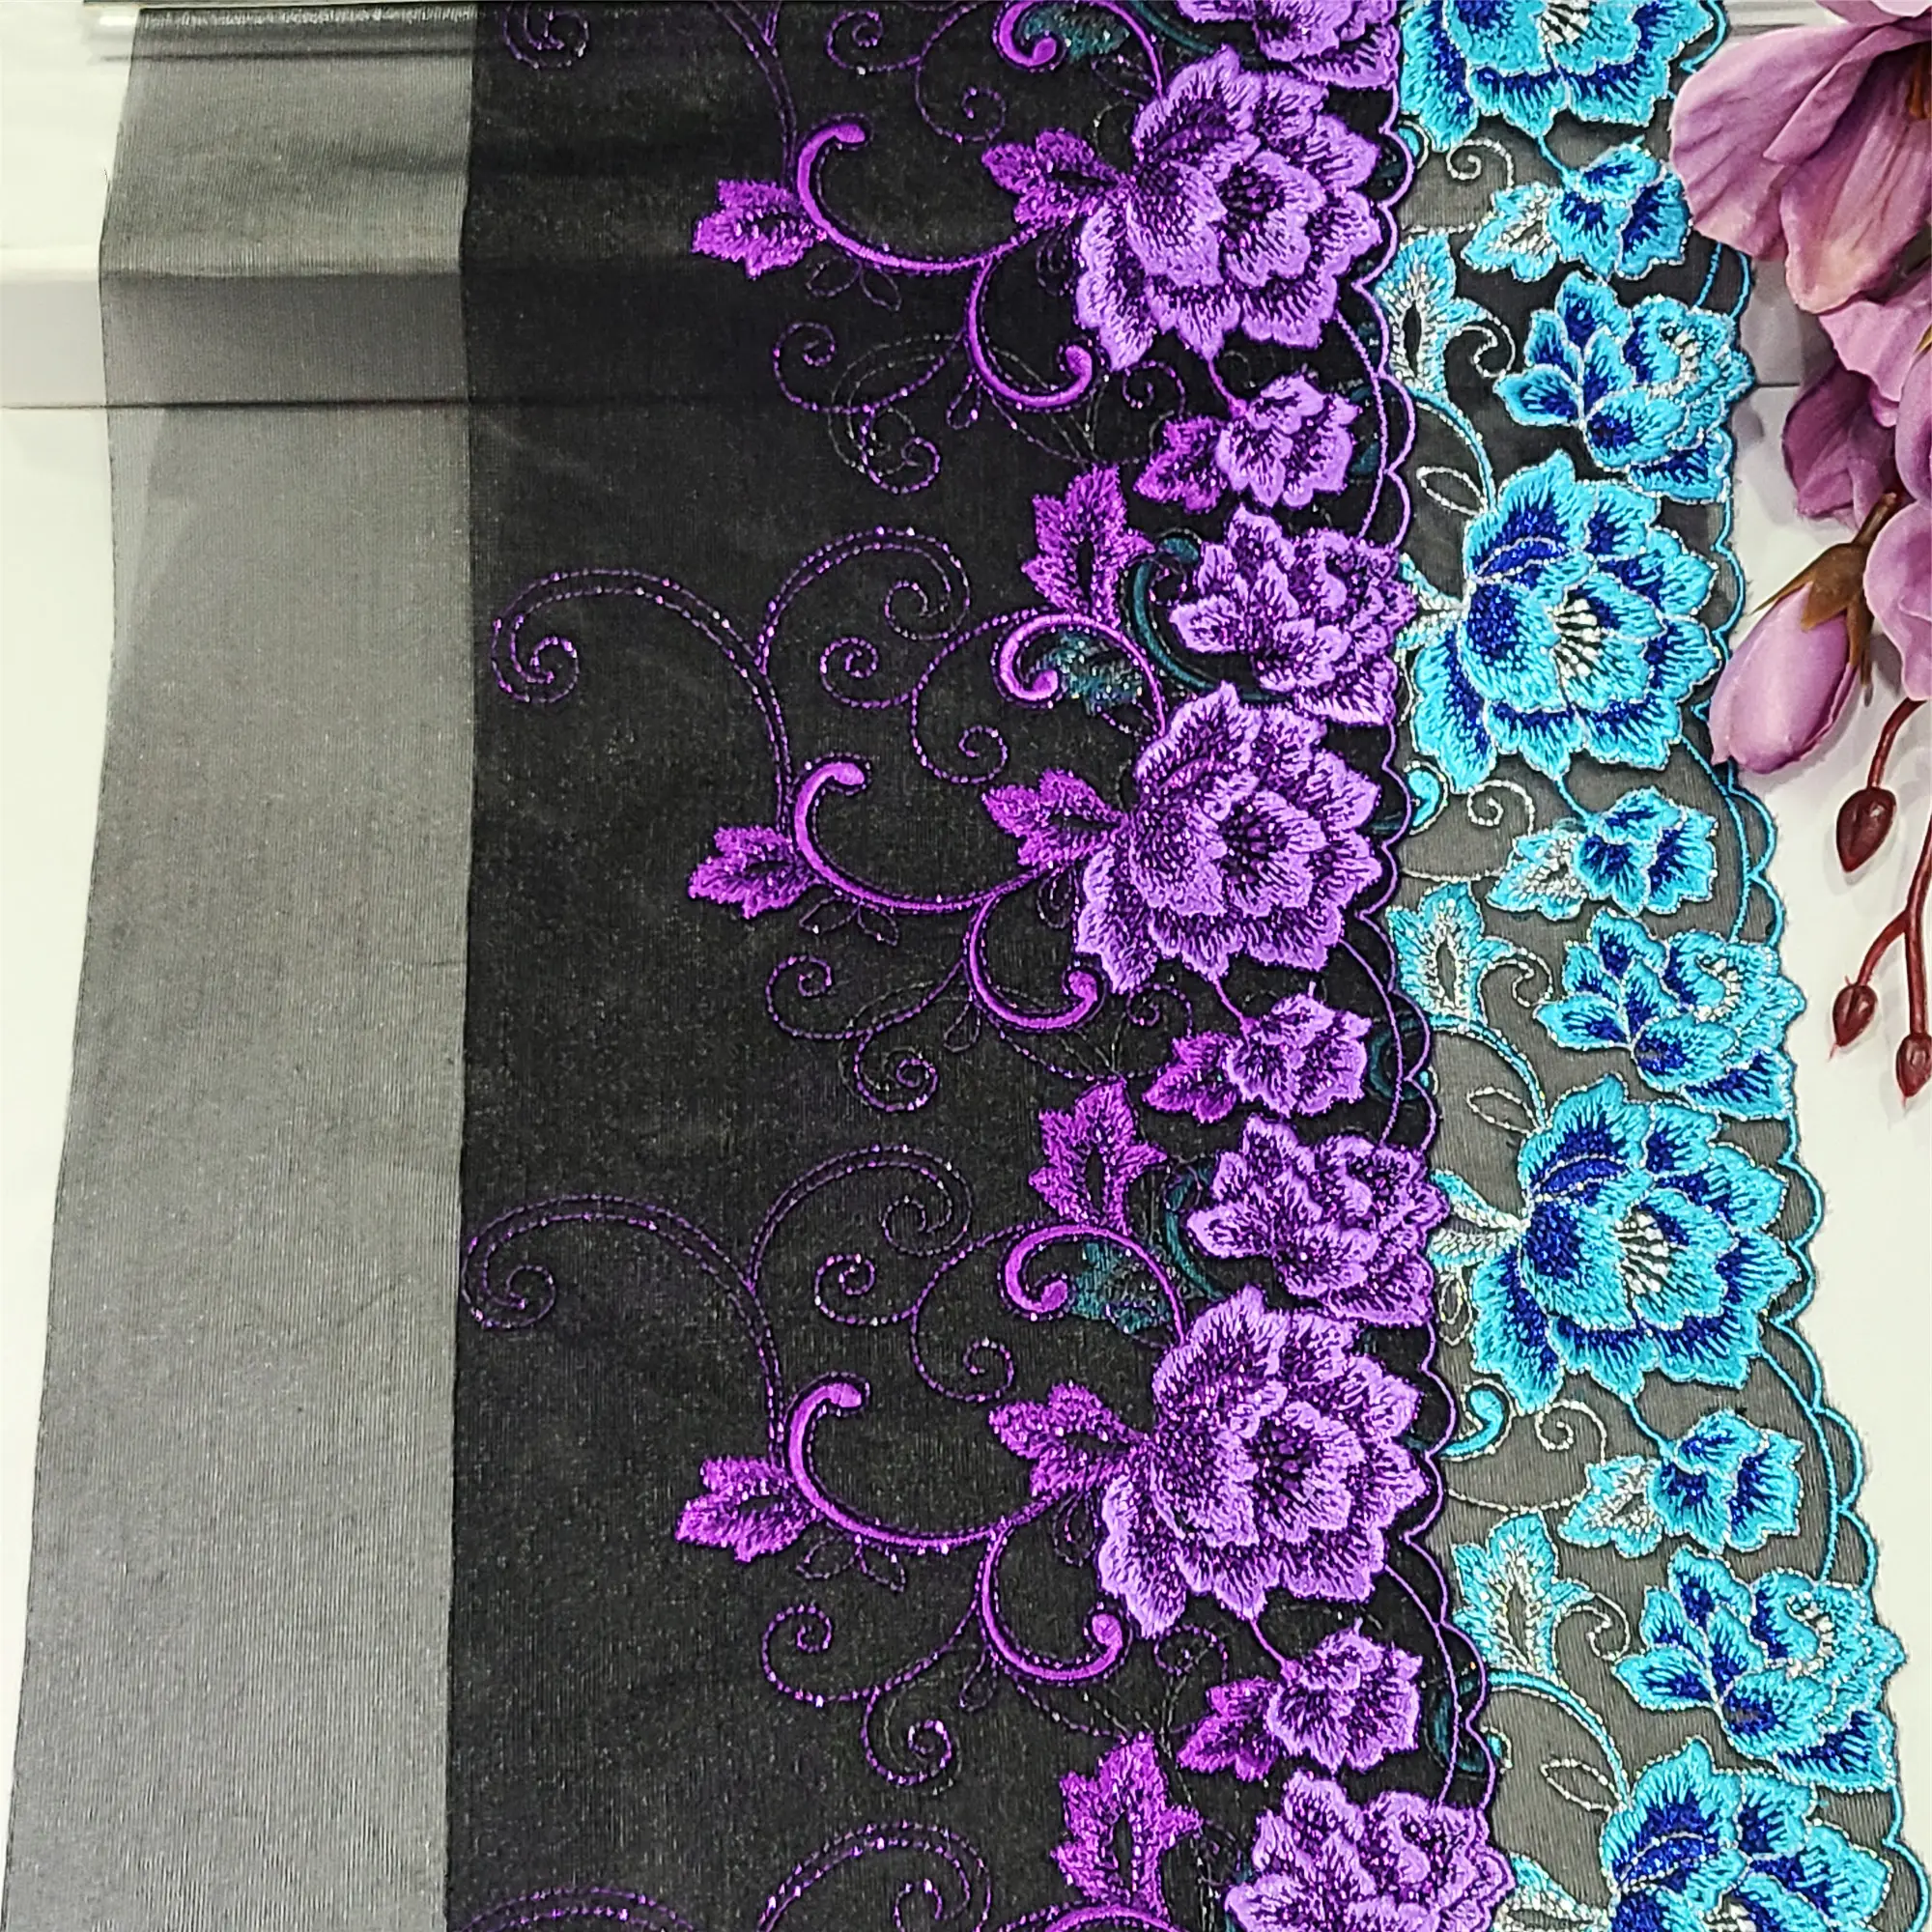 Maglia ricamo blu viola fiori pizzo biancheria intima trim tessuto lingerie accessori